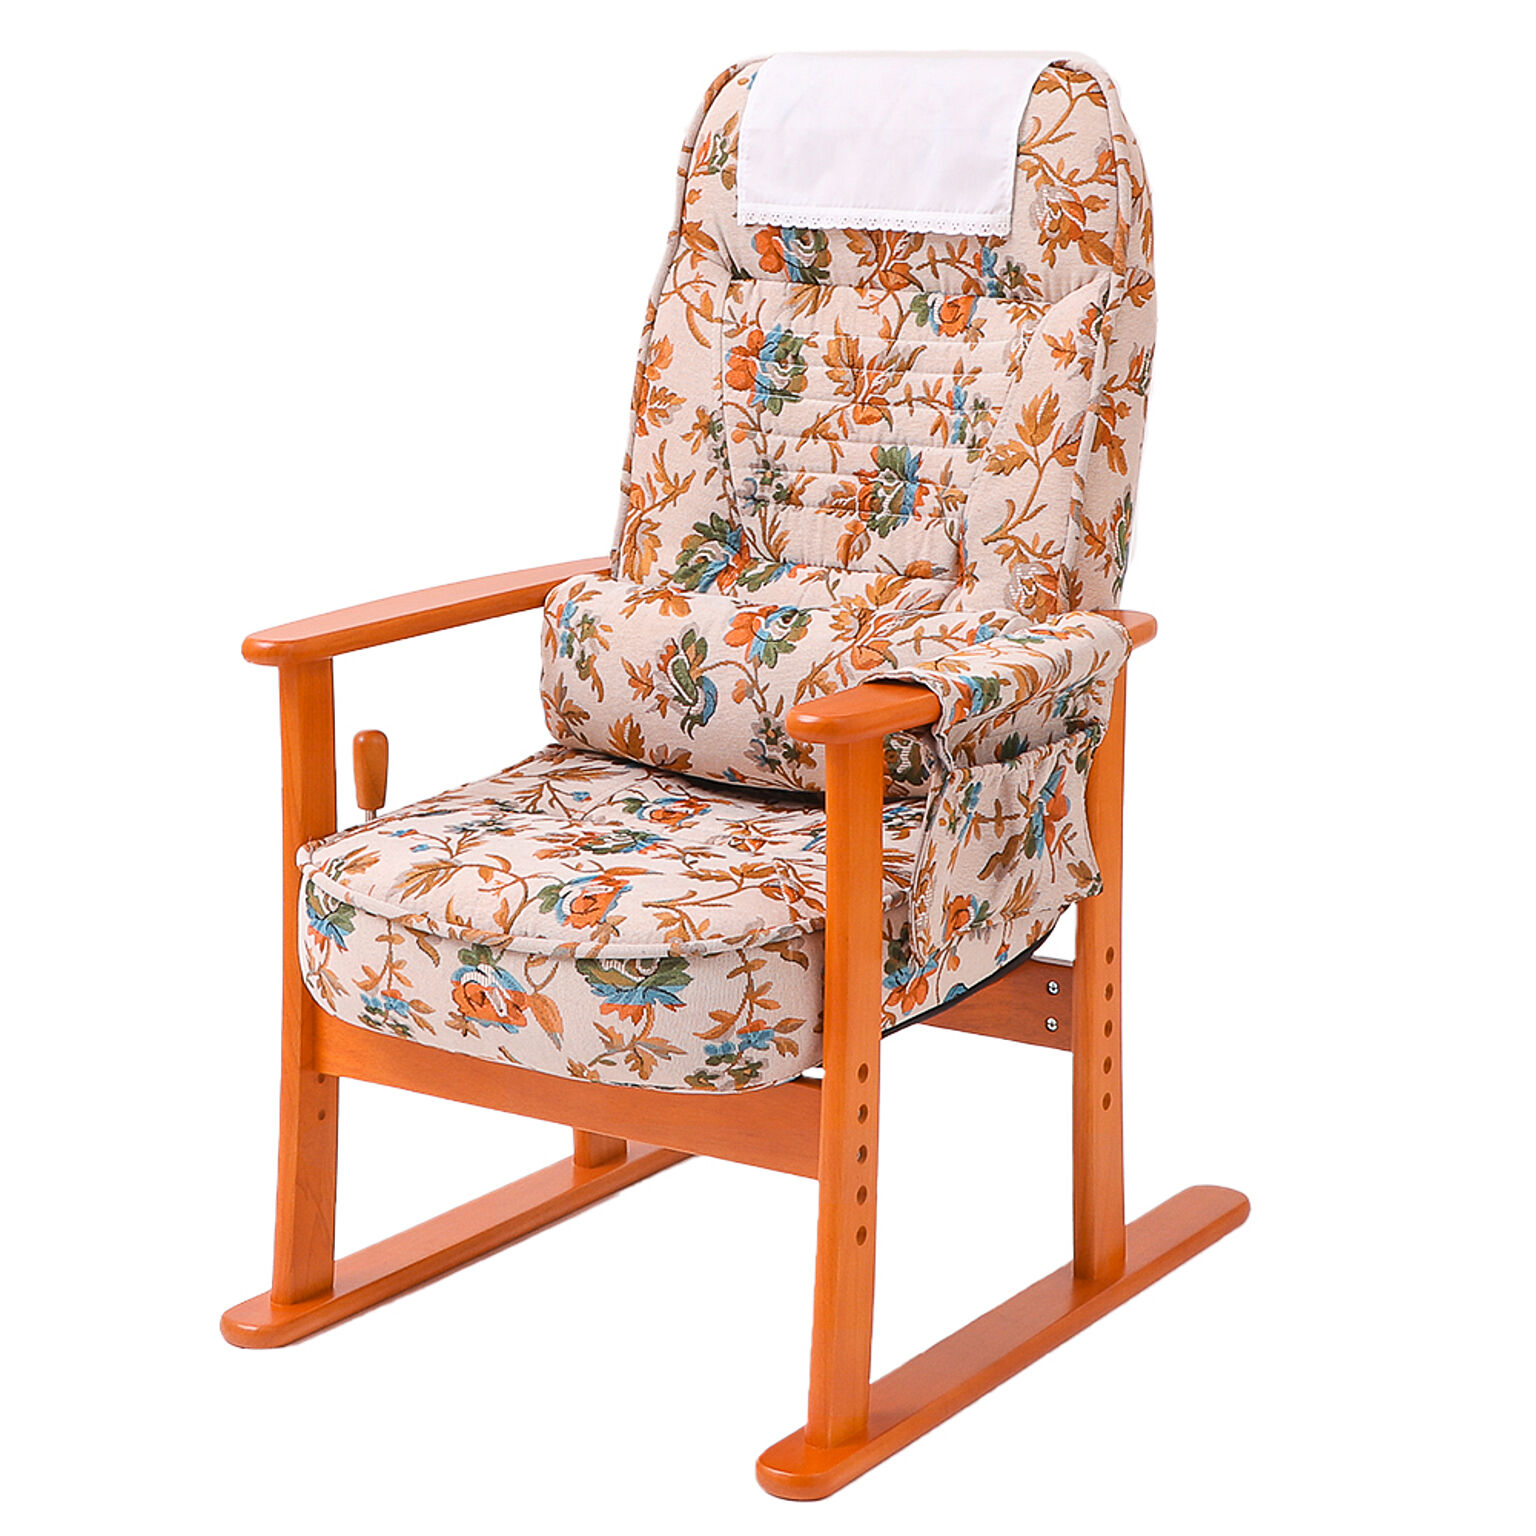 ヤマソロ 高座椅子 朱雀 座椅子 安楽椅子 チェア 高さ調整 リラックスチェア 無段階リクライニングチェア